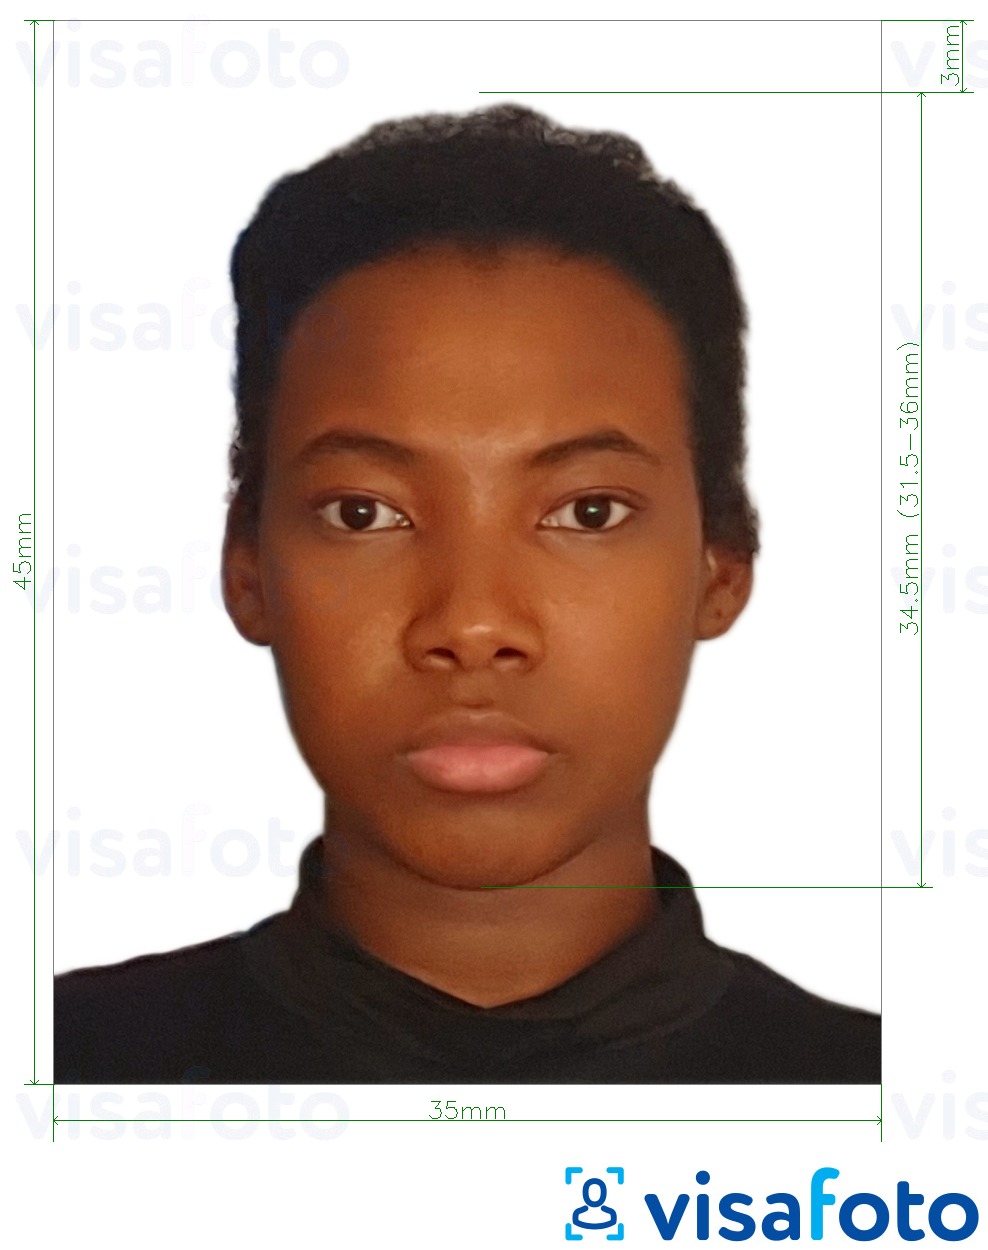 Fotobeispiel für Ghana visum 3,5x4,5 cm (35x45 mm) mit genauer größenangabe